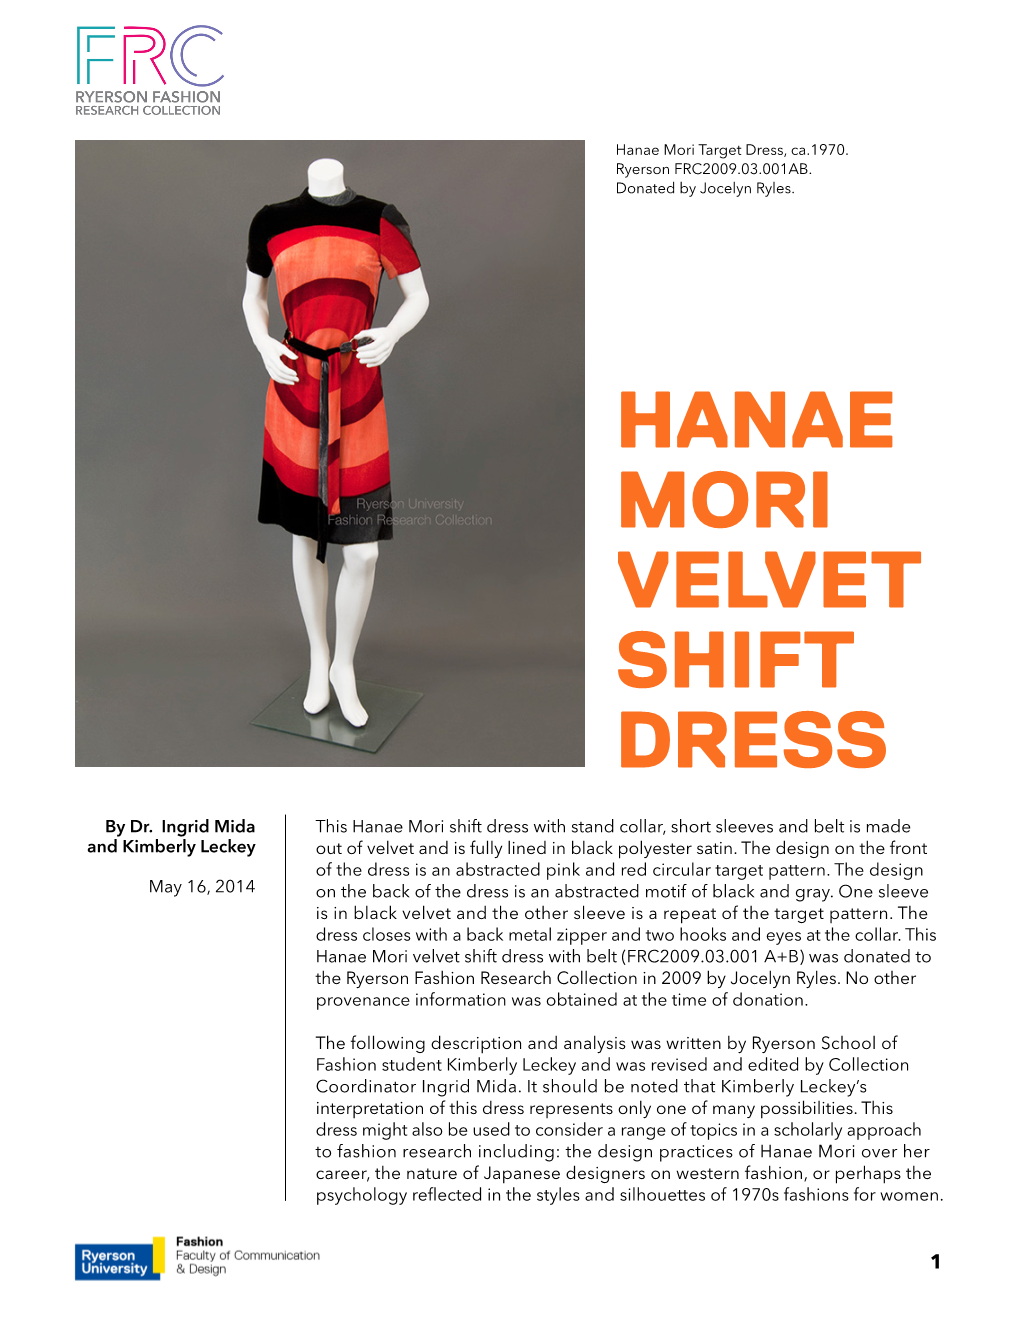 Hanae Mori Velvet Shift Dress